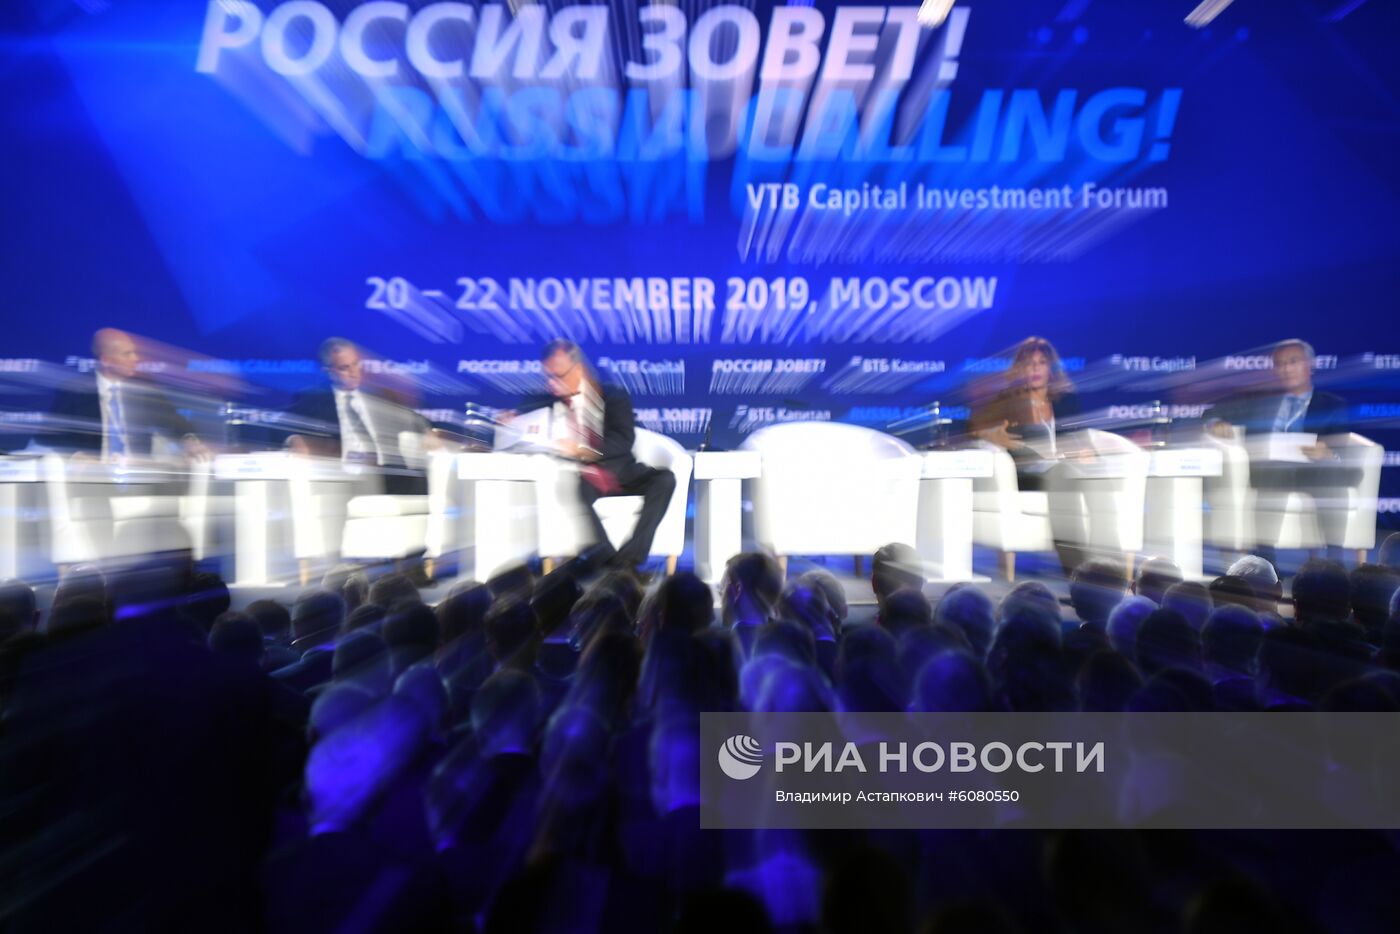 11-й Инвестиционный форум ВТБ Капитал "Россия зовет!"